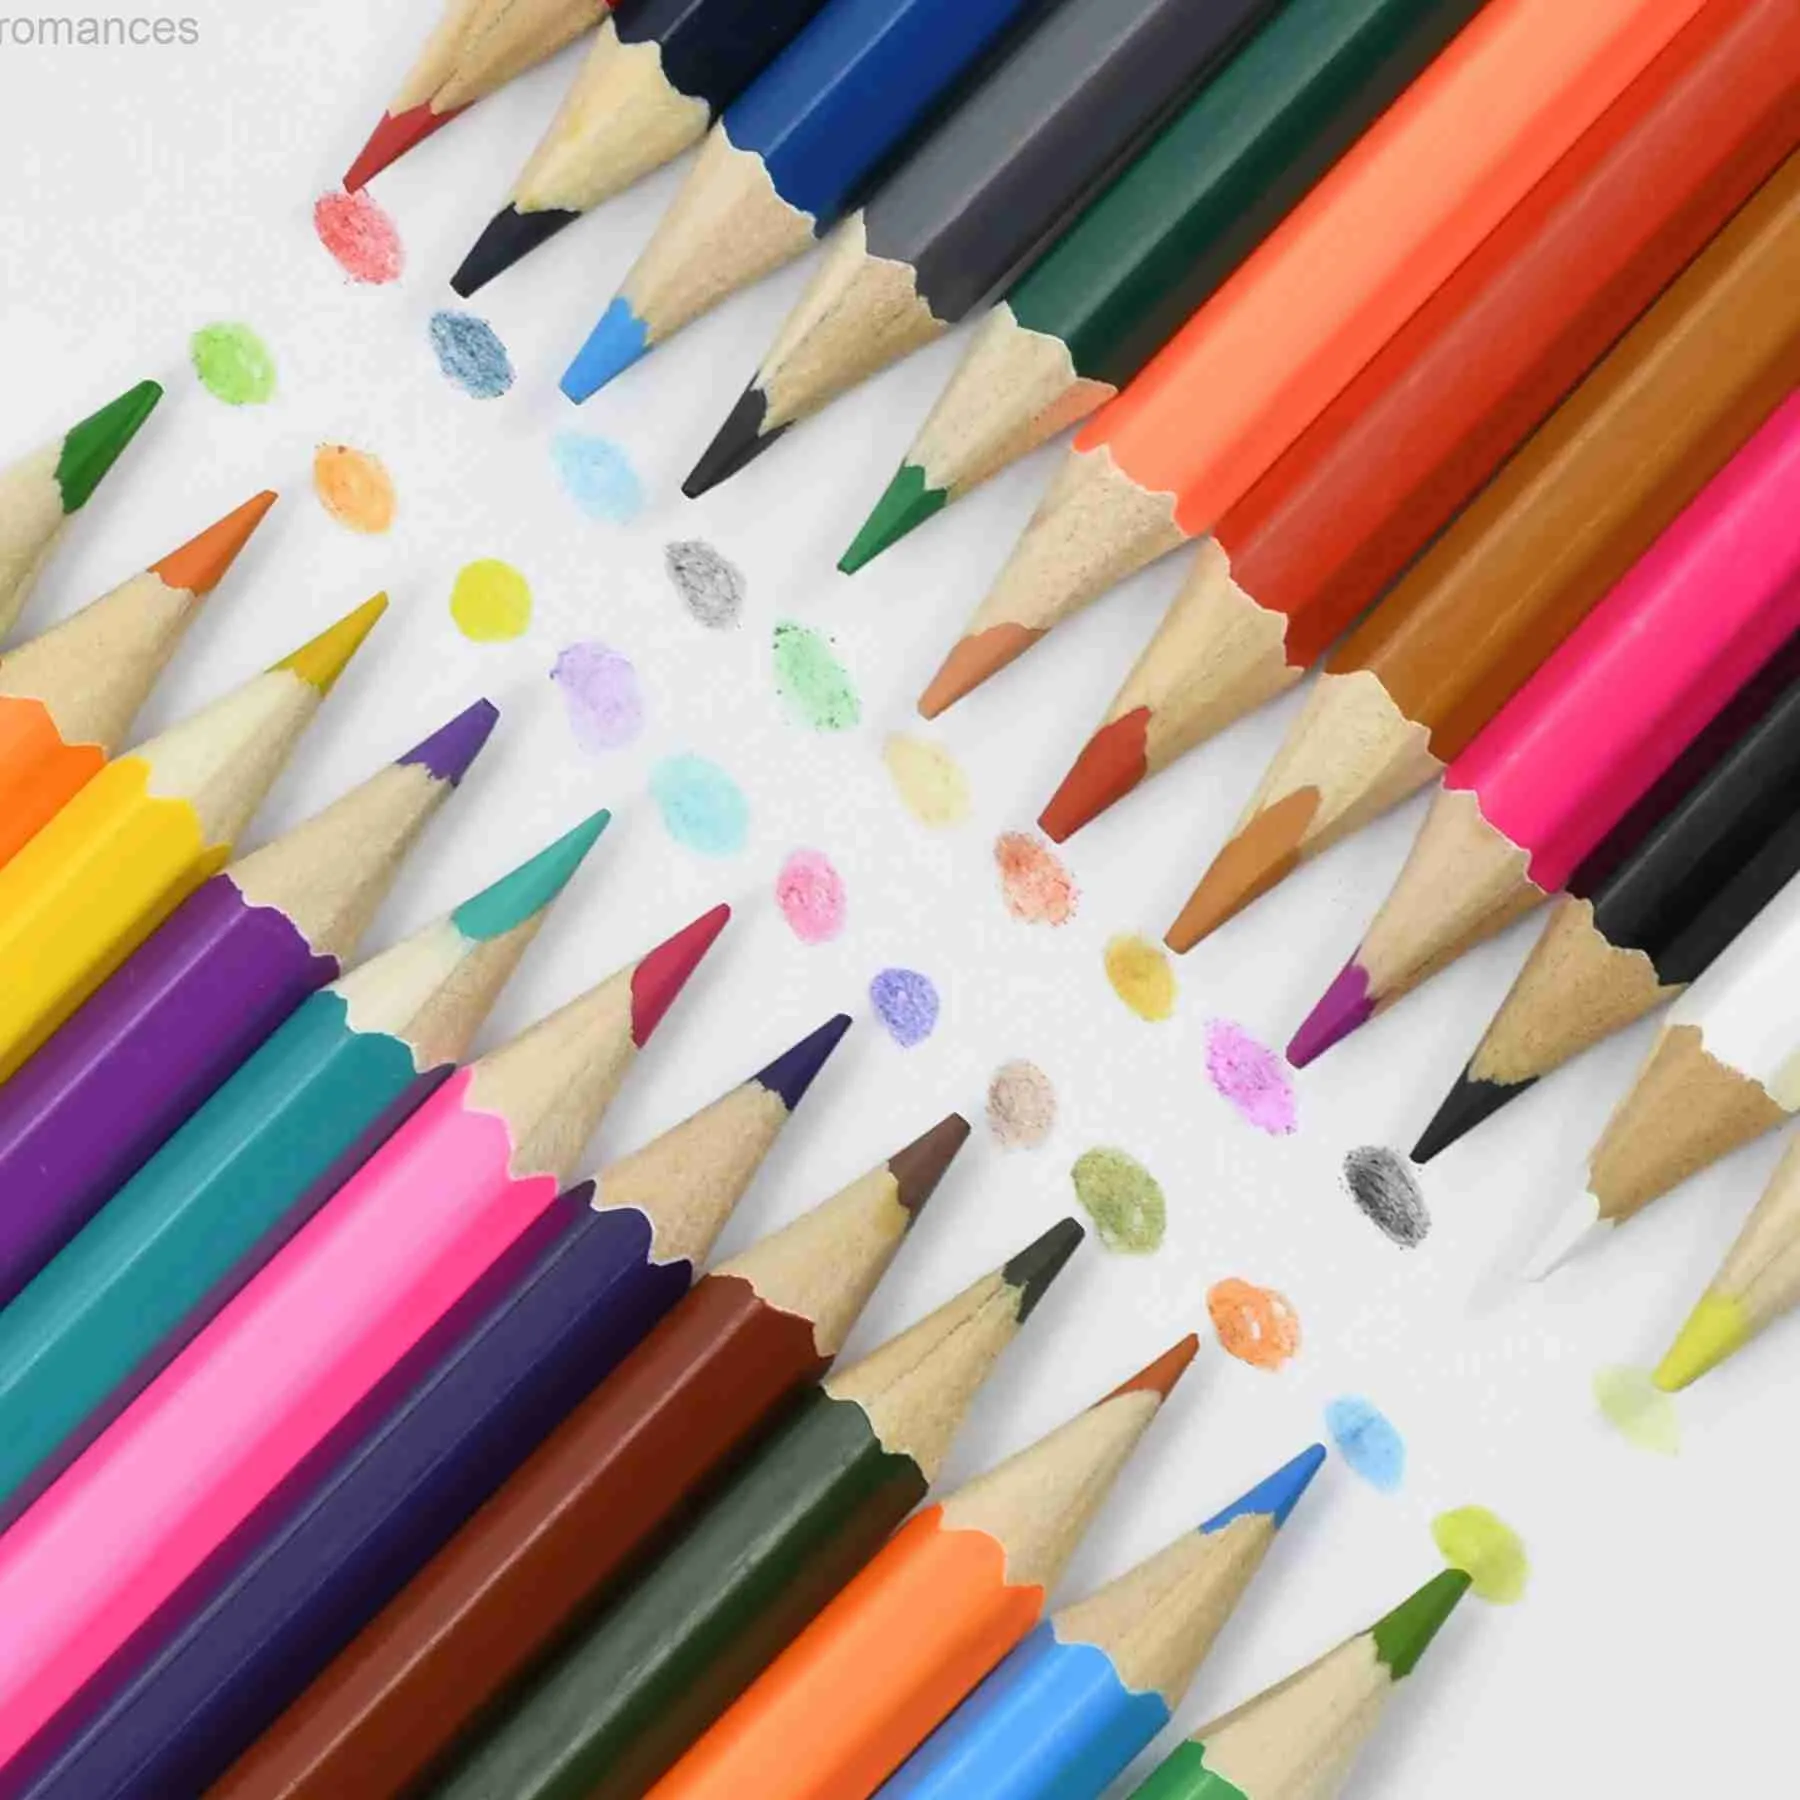 Pennor 24 stycken/set weibo 95303 hinkförpackning målad penna set barns kreativa penna present D240510